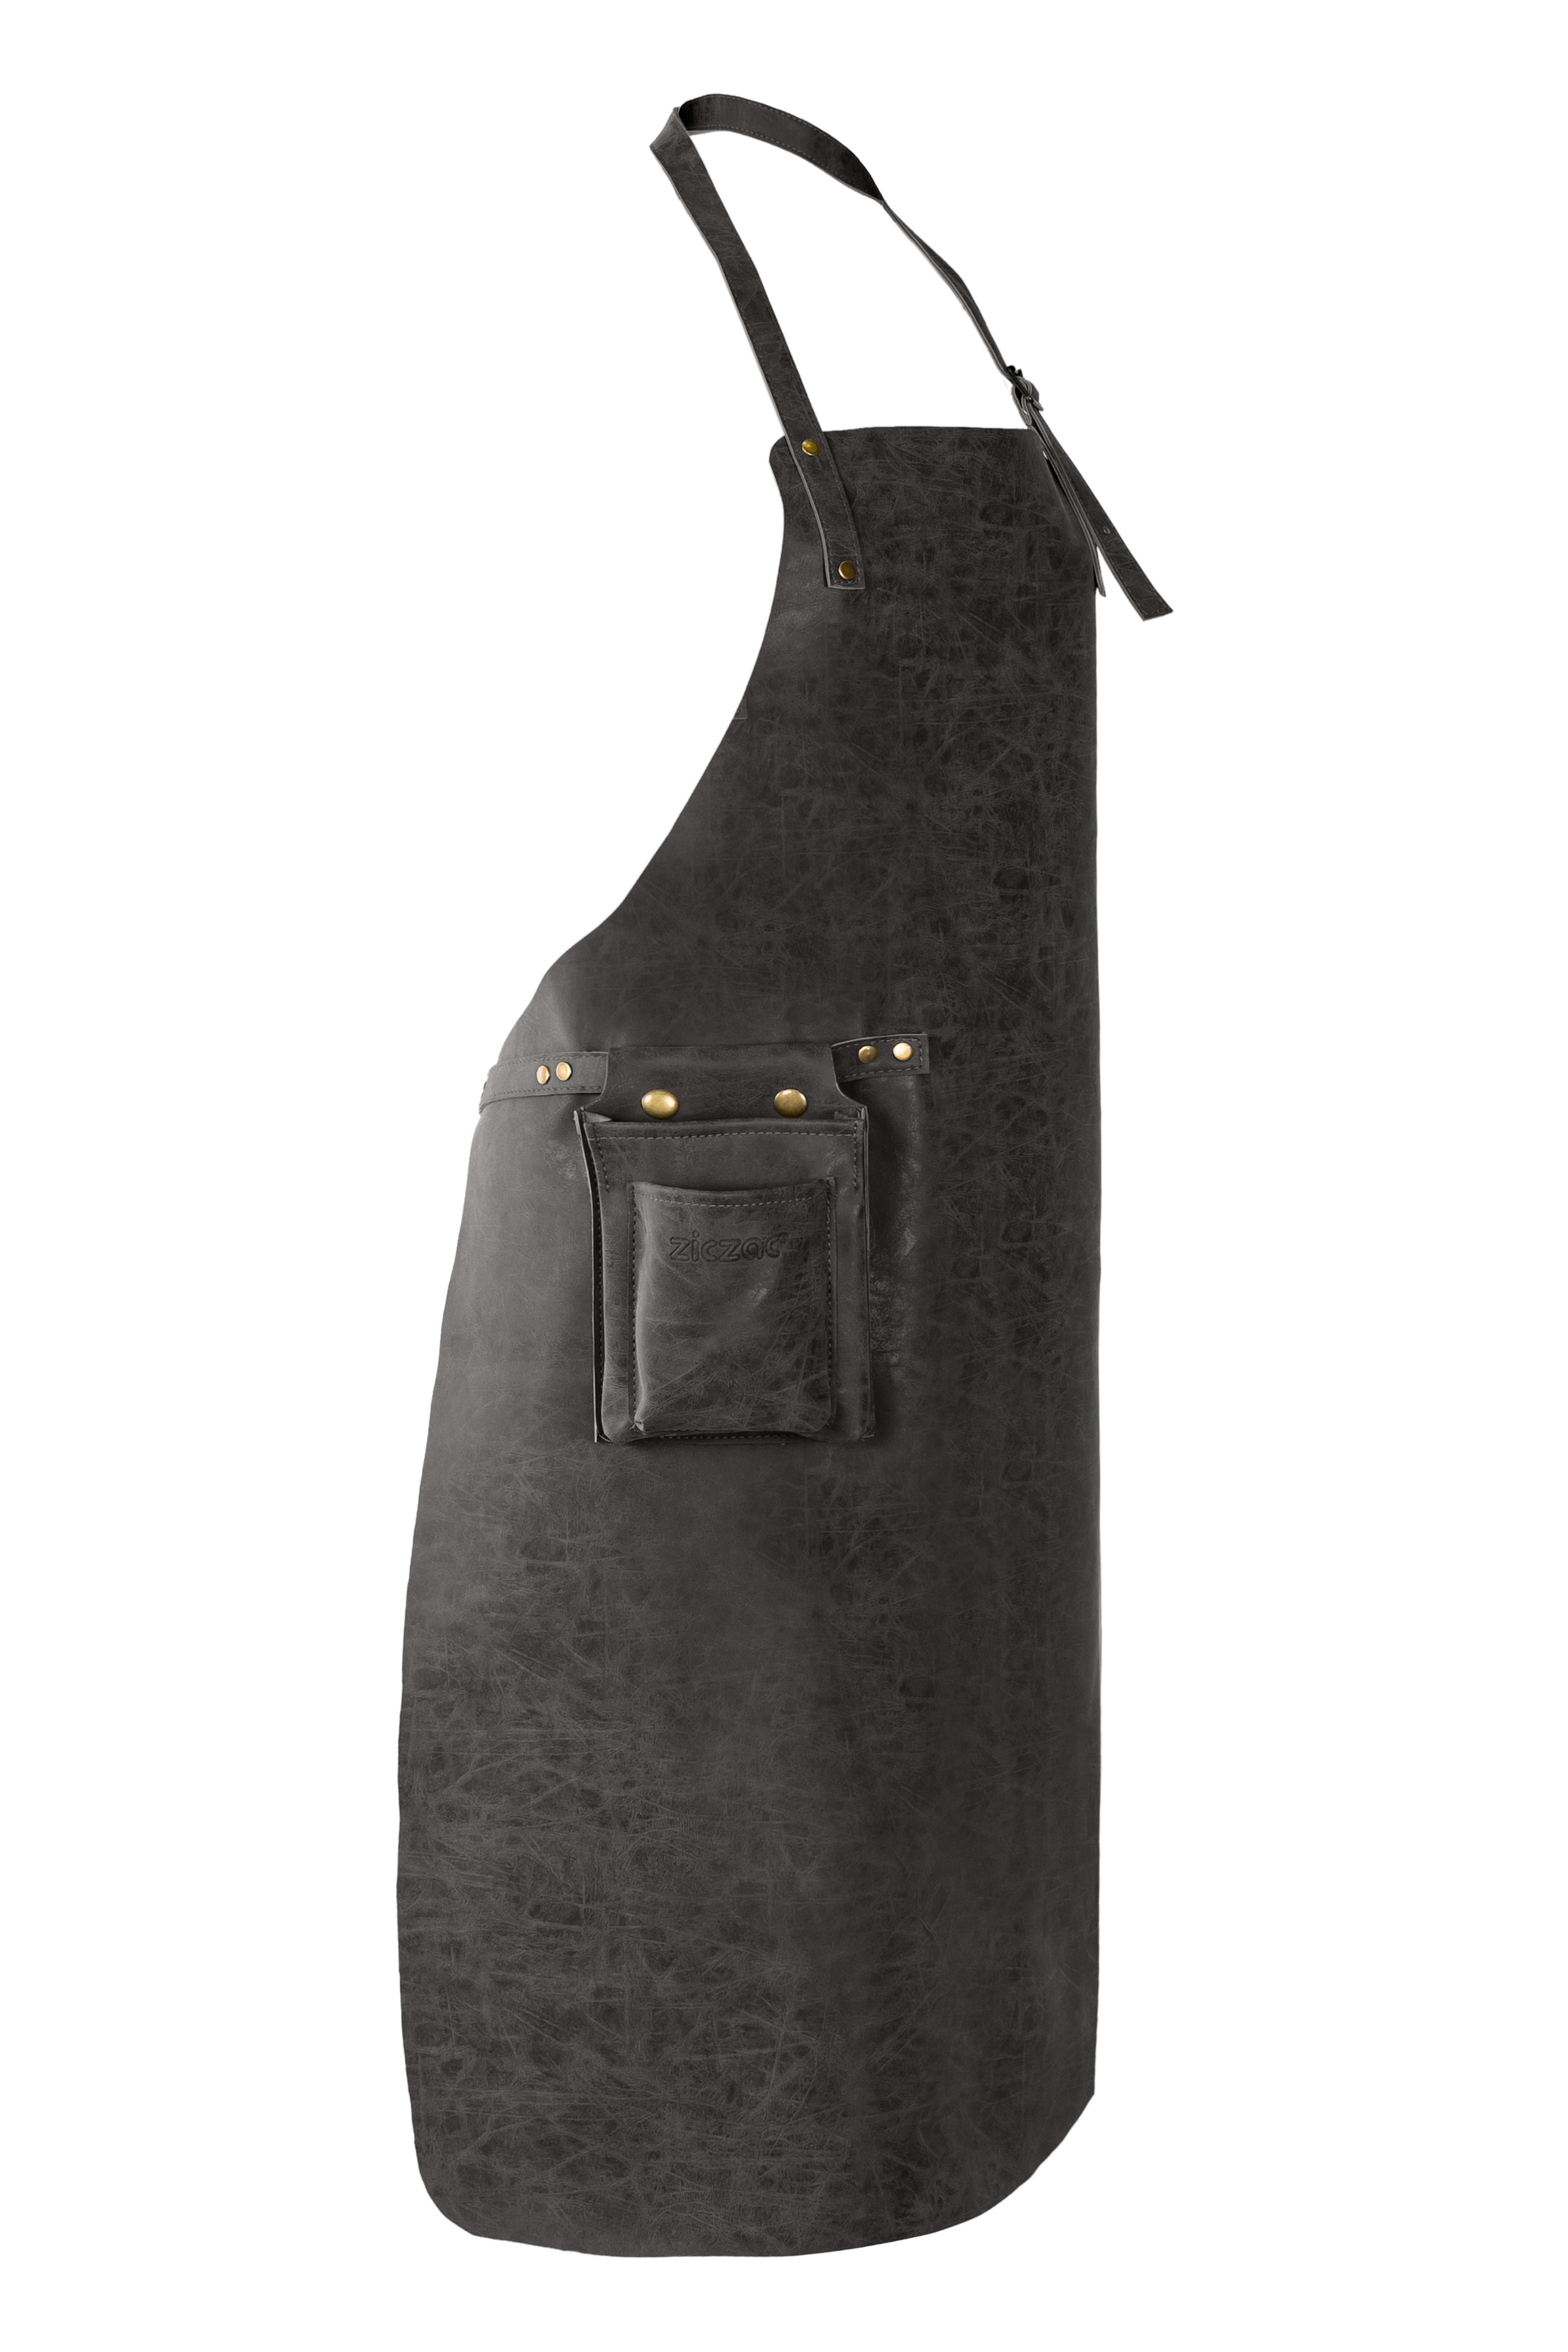 Apron TRUMAN (Towel loop - no pocket - opt. Accessory bag), 70x90 cm, black